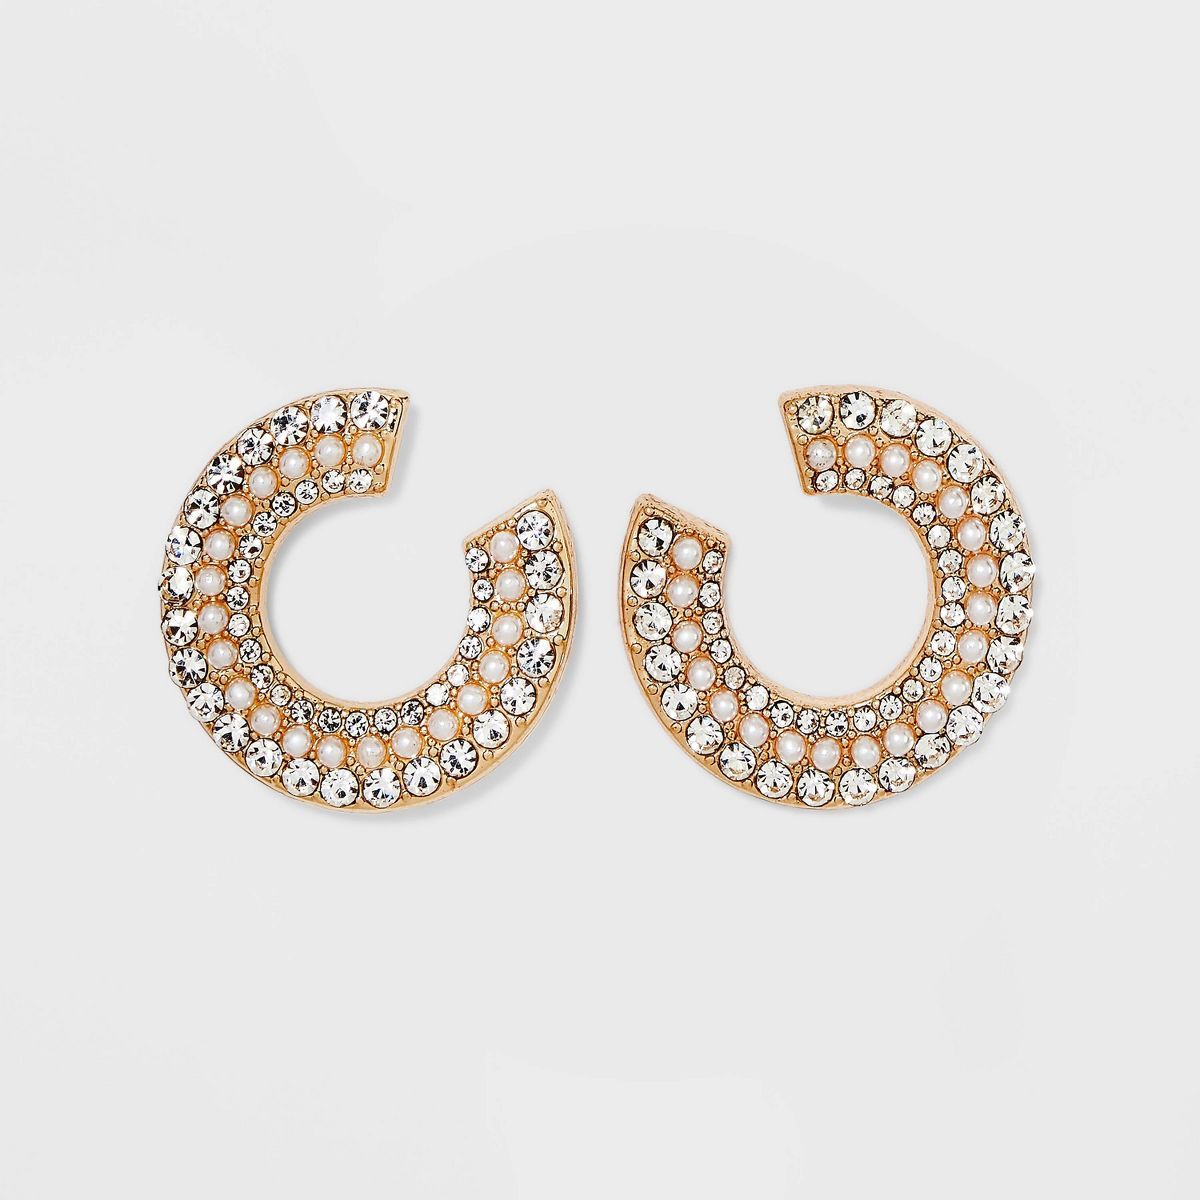 SUGARFIX by BaubleBar Pearl and Crystal Hoop Earrings - Gold | Target